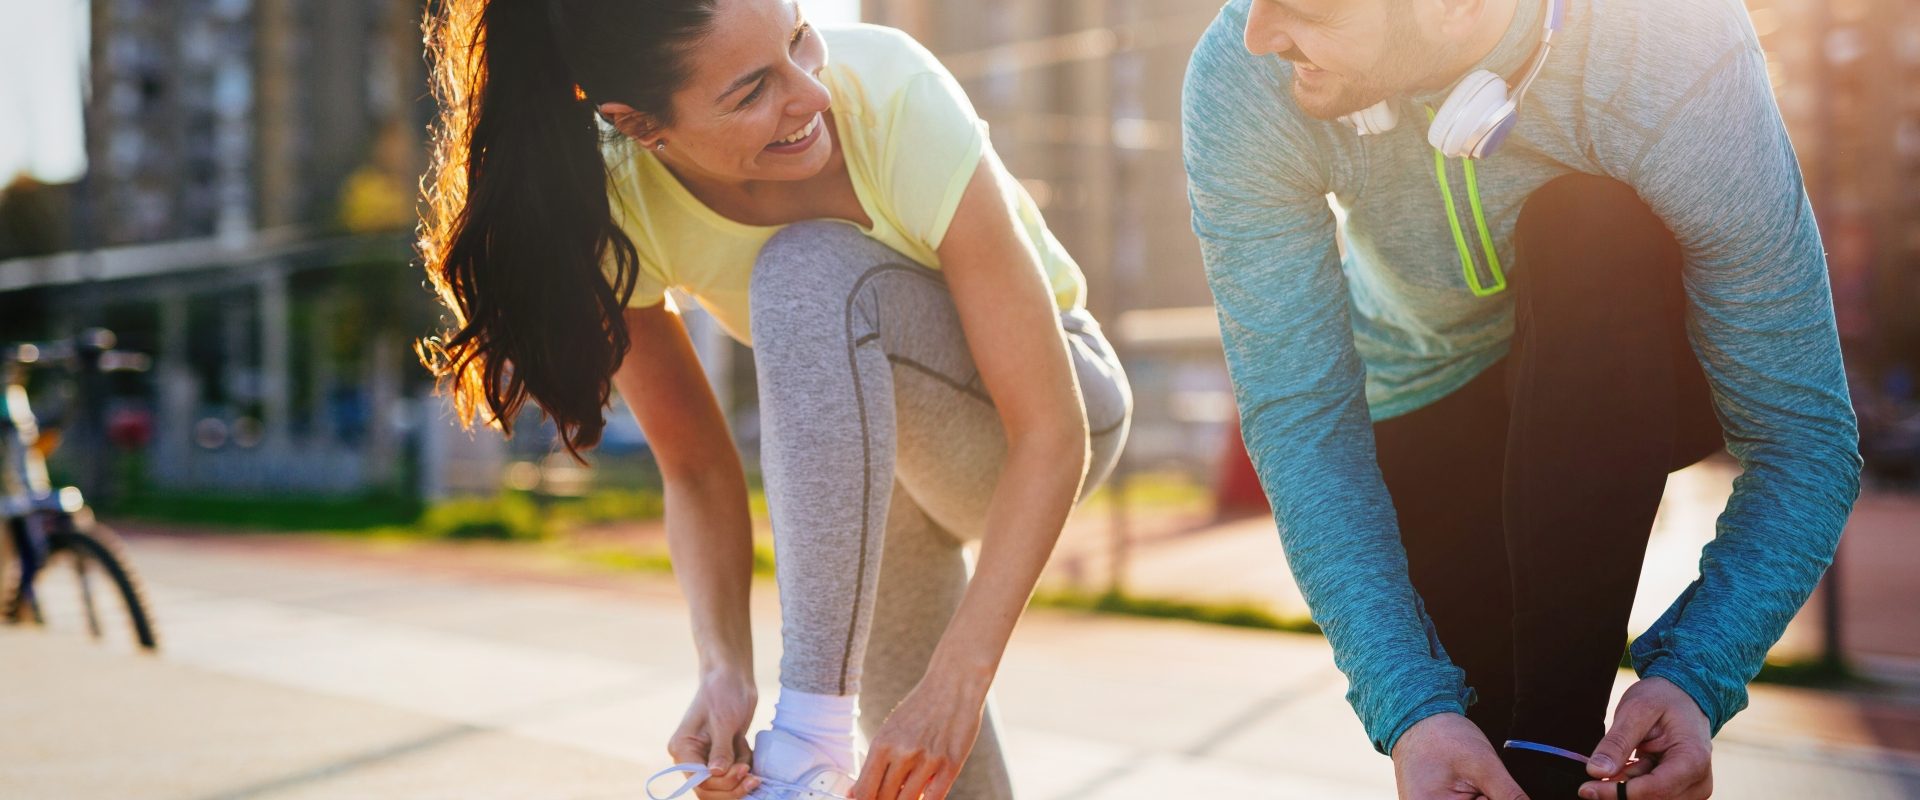 Czym jest trening cardio? Kobieta i mężczyzna uprawiają jogging w mieście.